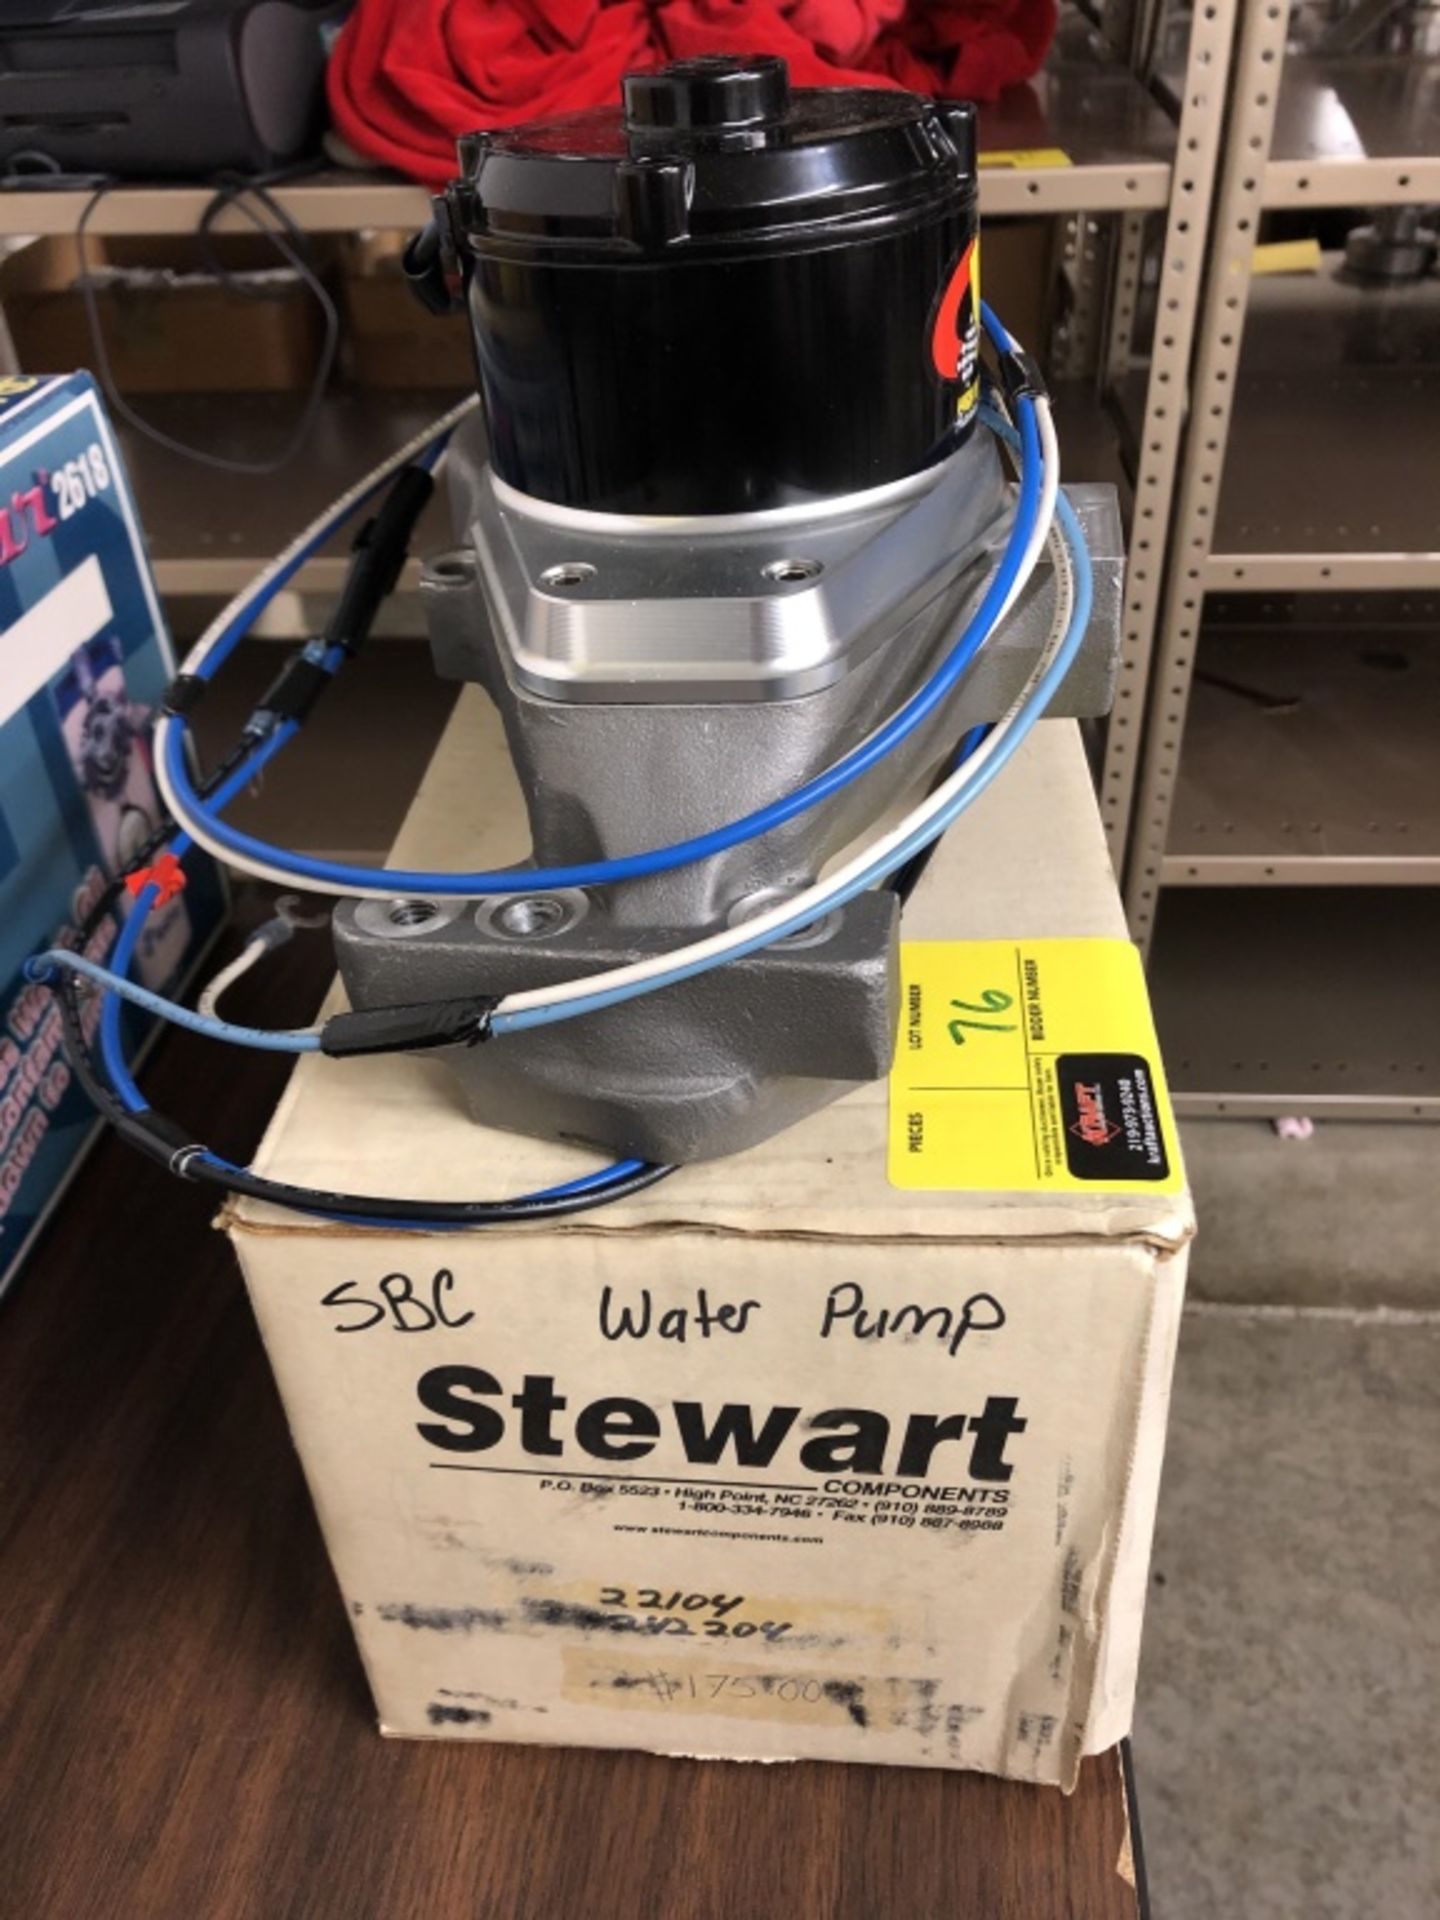 Stewart water pump - Image 4 of 4